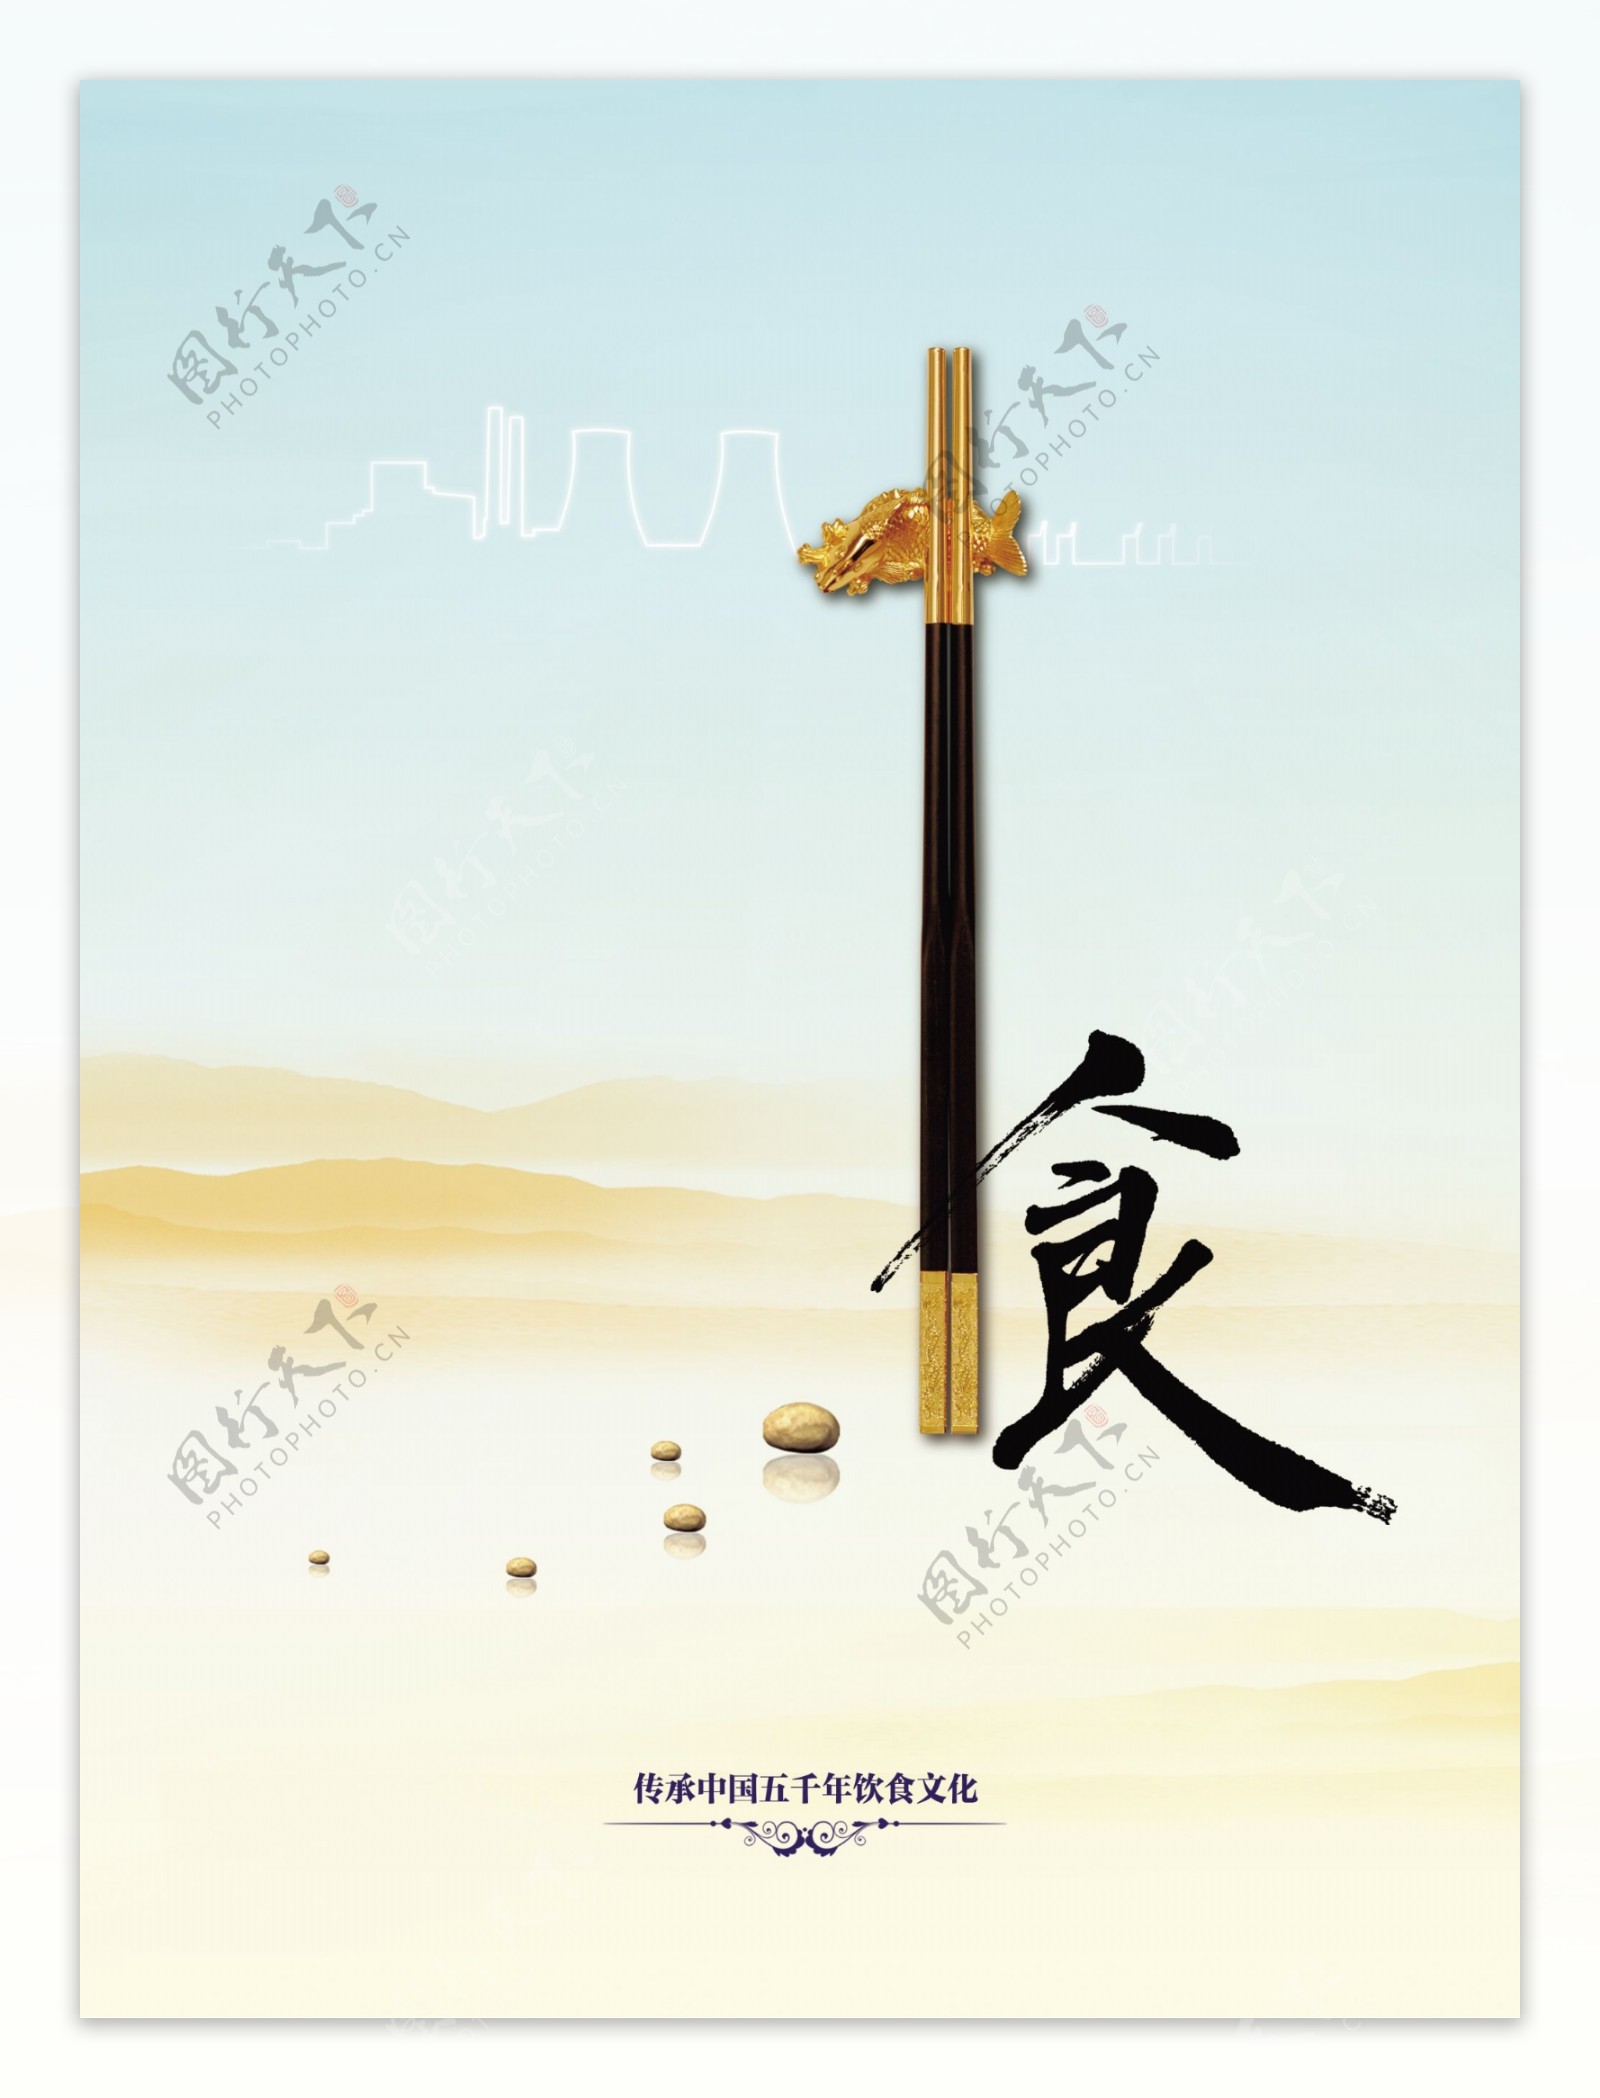 中华食文化筷子海报图片